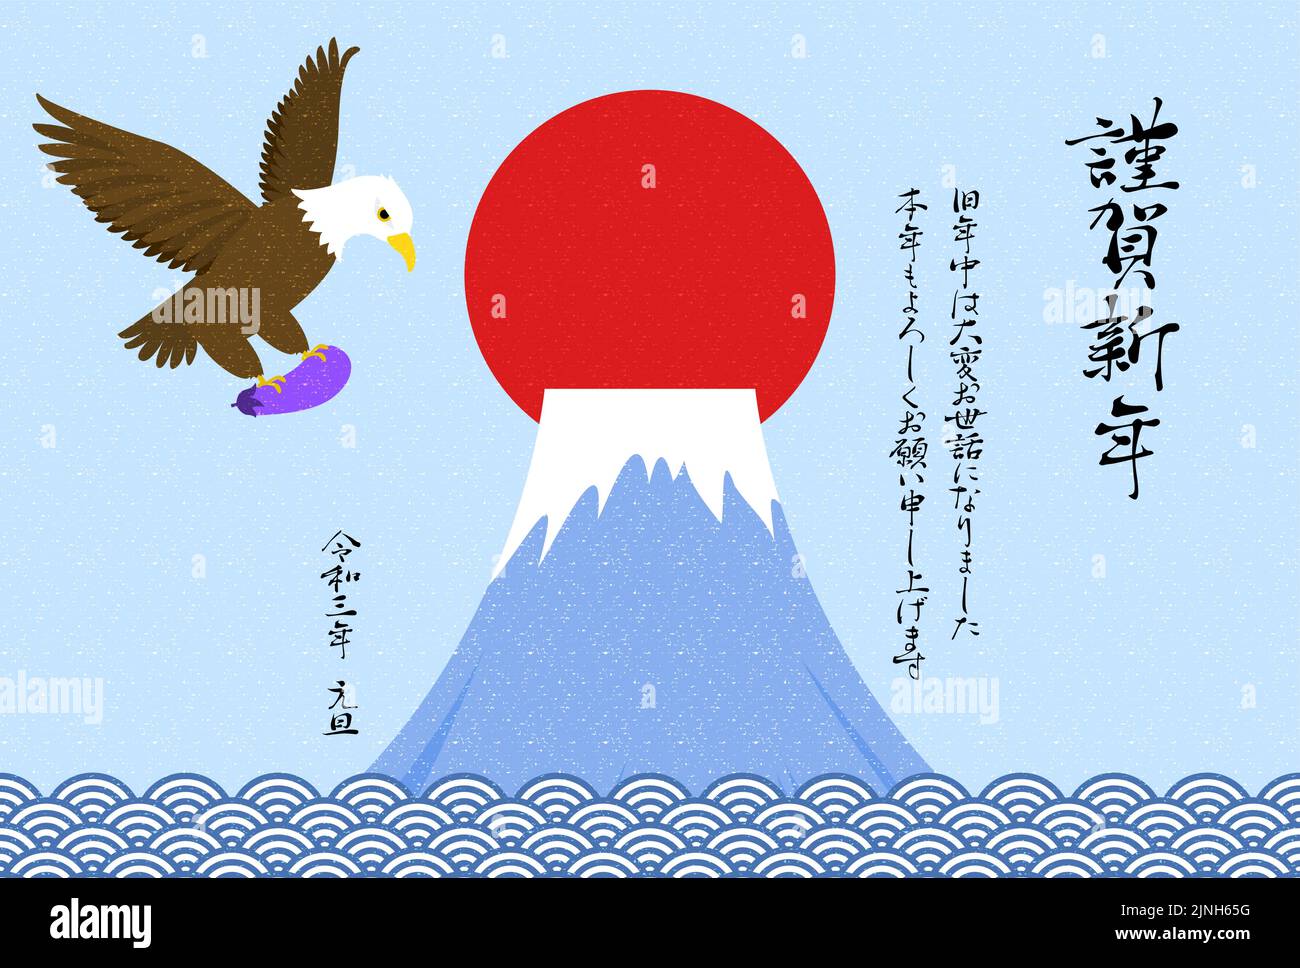 Ilustración de una tarjeta de Año Nuevo en la que un halcón agarra berenjena y vuela contra el telón de fondo del Monte Fuji - Traducción: Feliz añoGracias f Ilustración del Vector